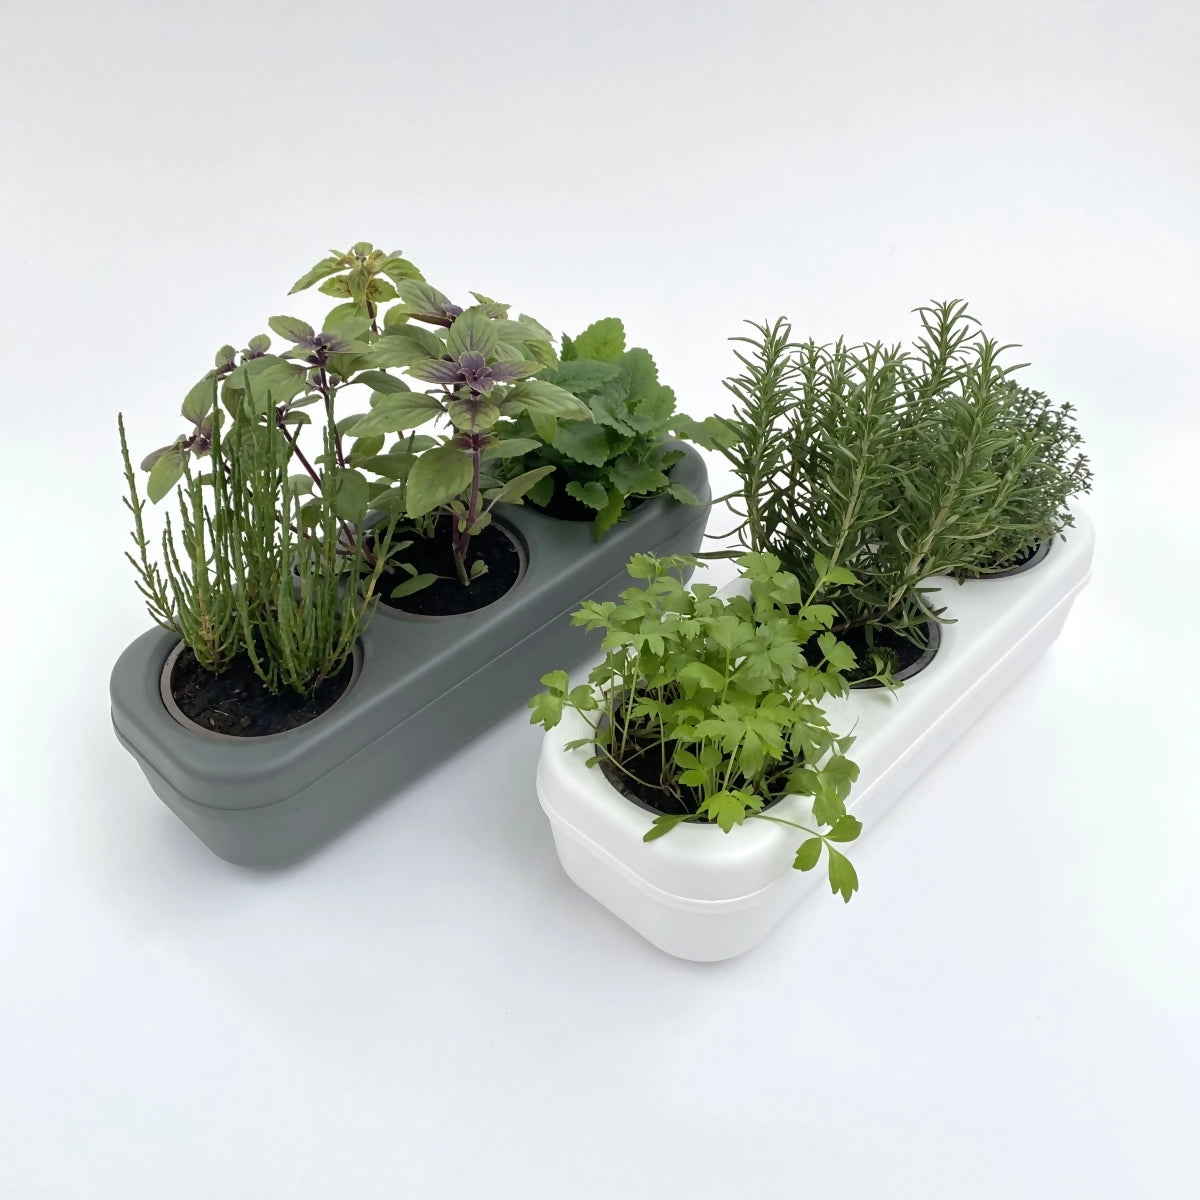 Dreifaches semi-hydroponisches städtisches Gemüsegarten-Set – Grau - 0